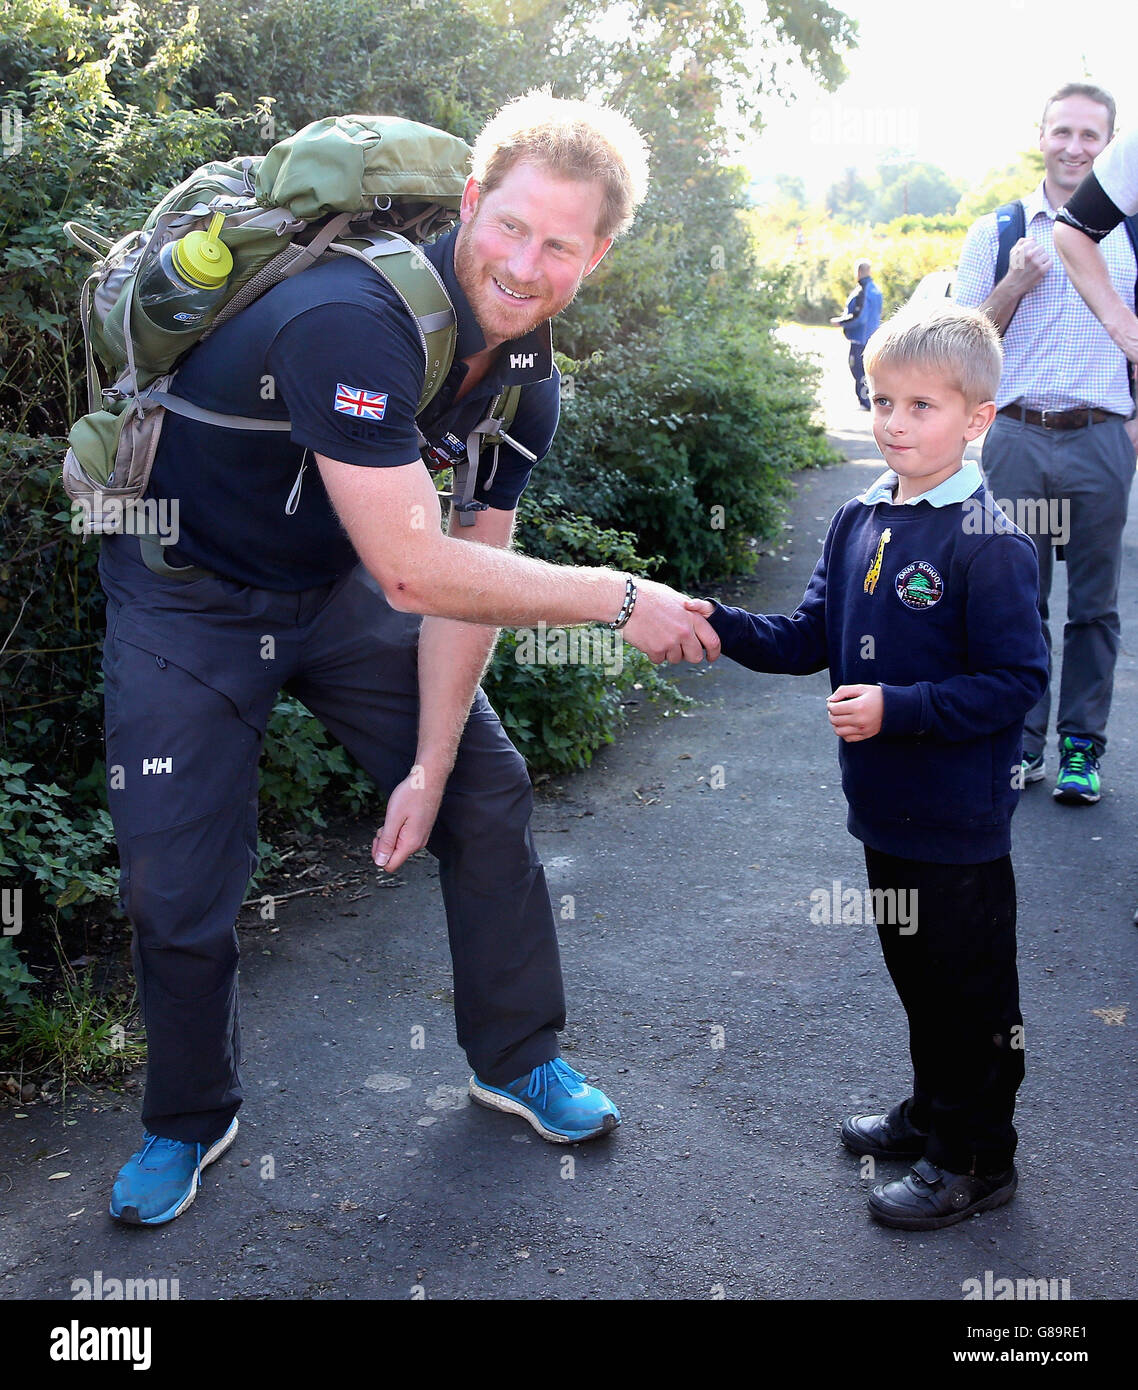 Le prince Harry rencontre un jeune garçon de l'école lorsqu'il a rejoint l'équipe de marche de la Grande-Bretagne des blessés lors de leur marche vers Ludlow dans le Shropshire, alors qu'ils parcourent la longueur du pays sur leurs propres routes personnelles vers la reprise. Banque D'Images